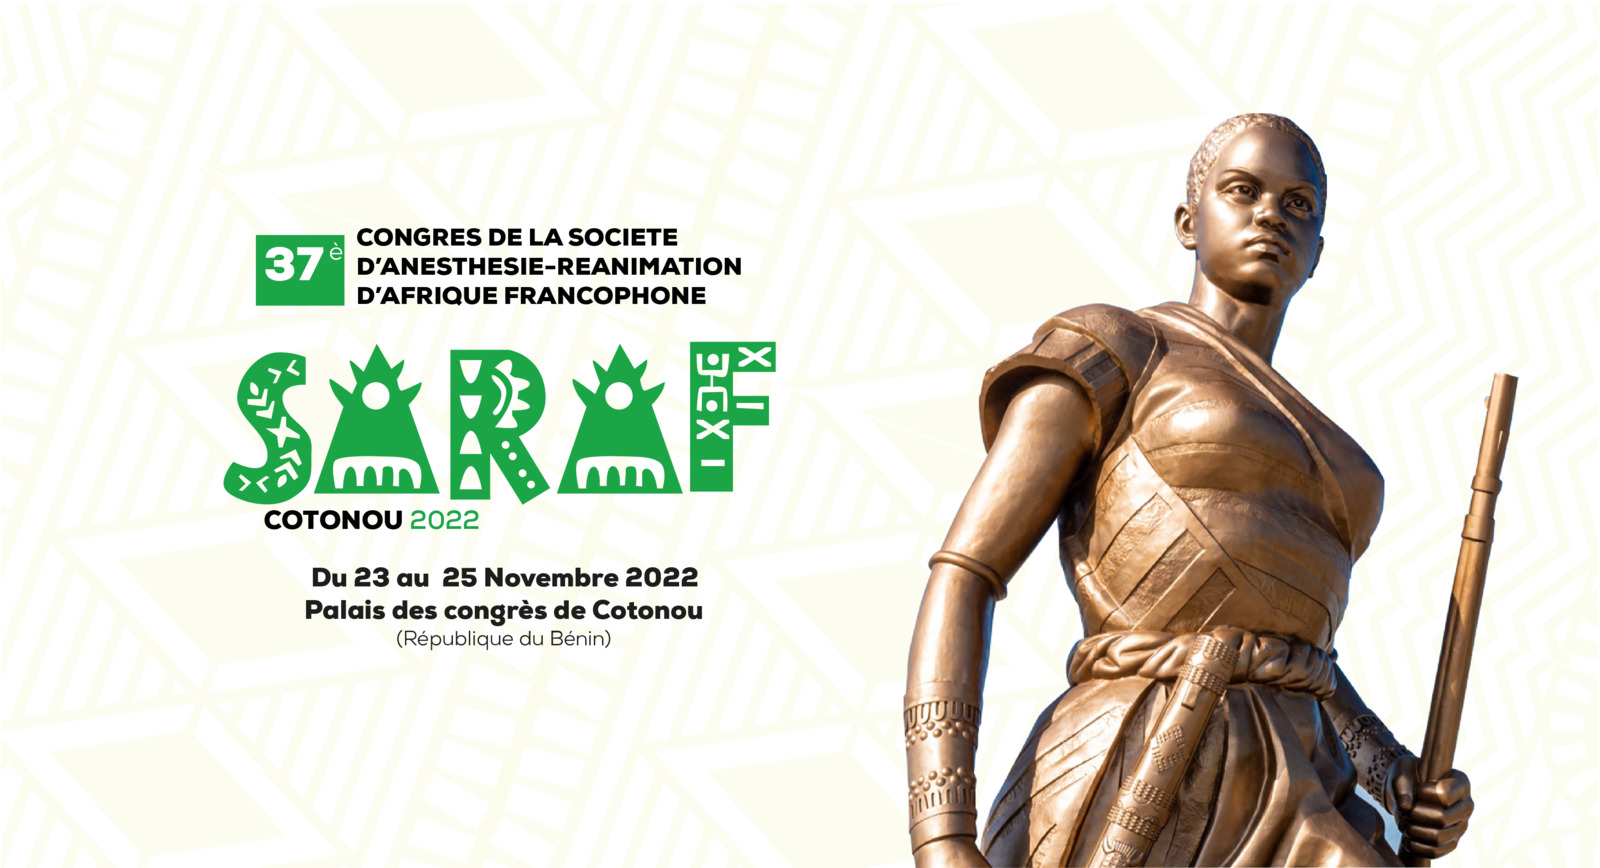 37è Congrès de la Société d'Anesthésie-Réanimation d'Afrique Francophone